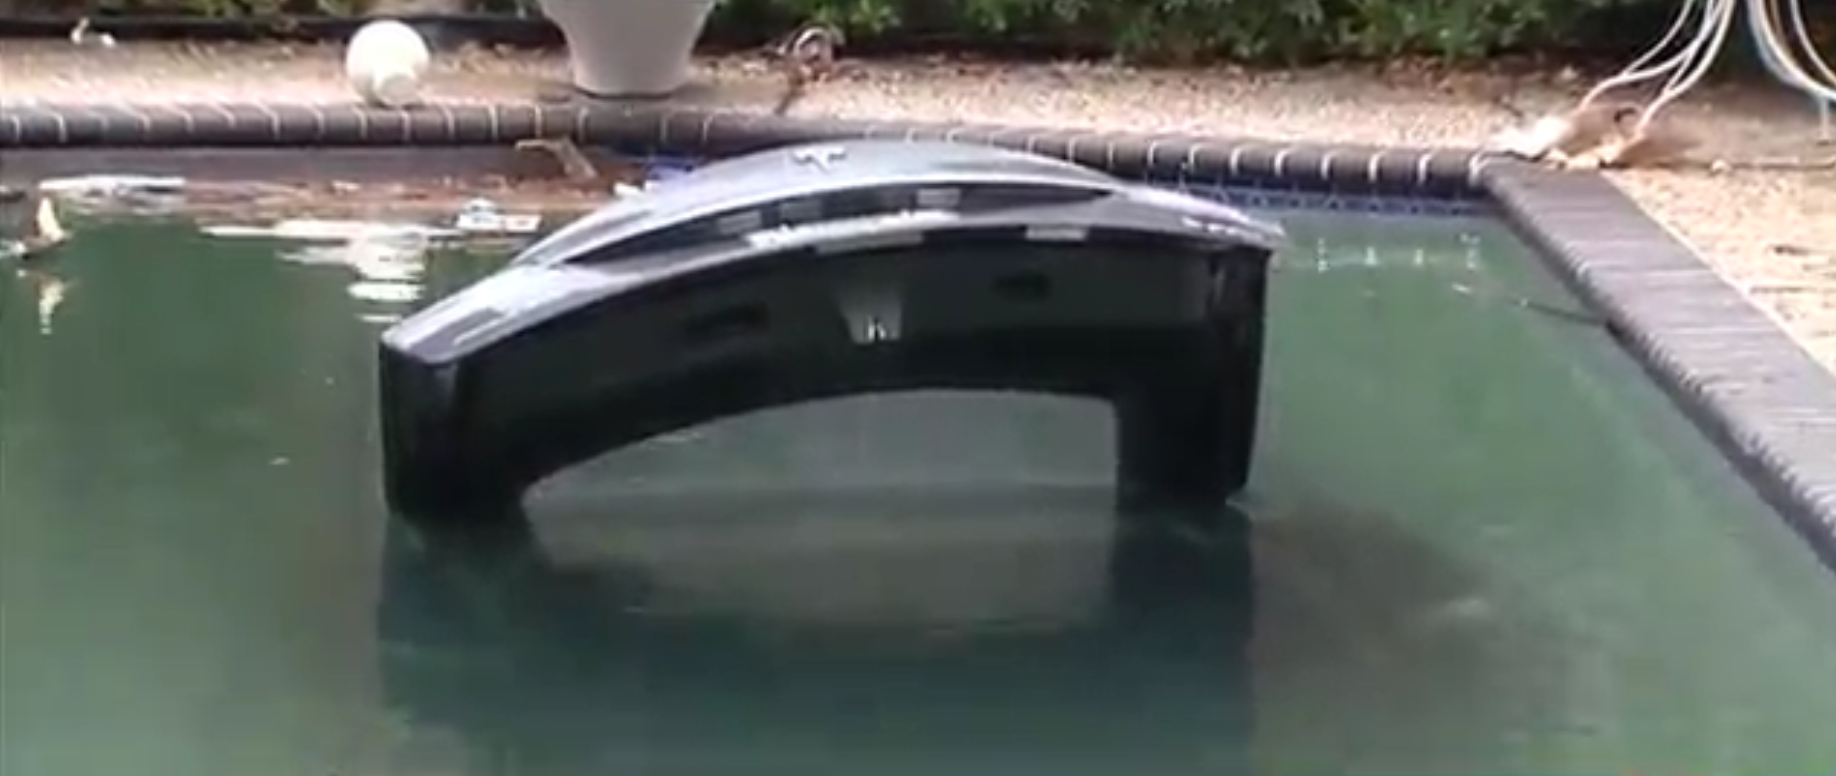 Tesla in pool